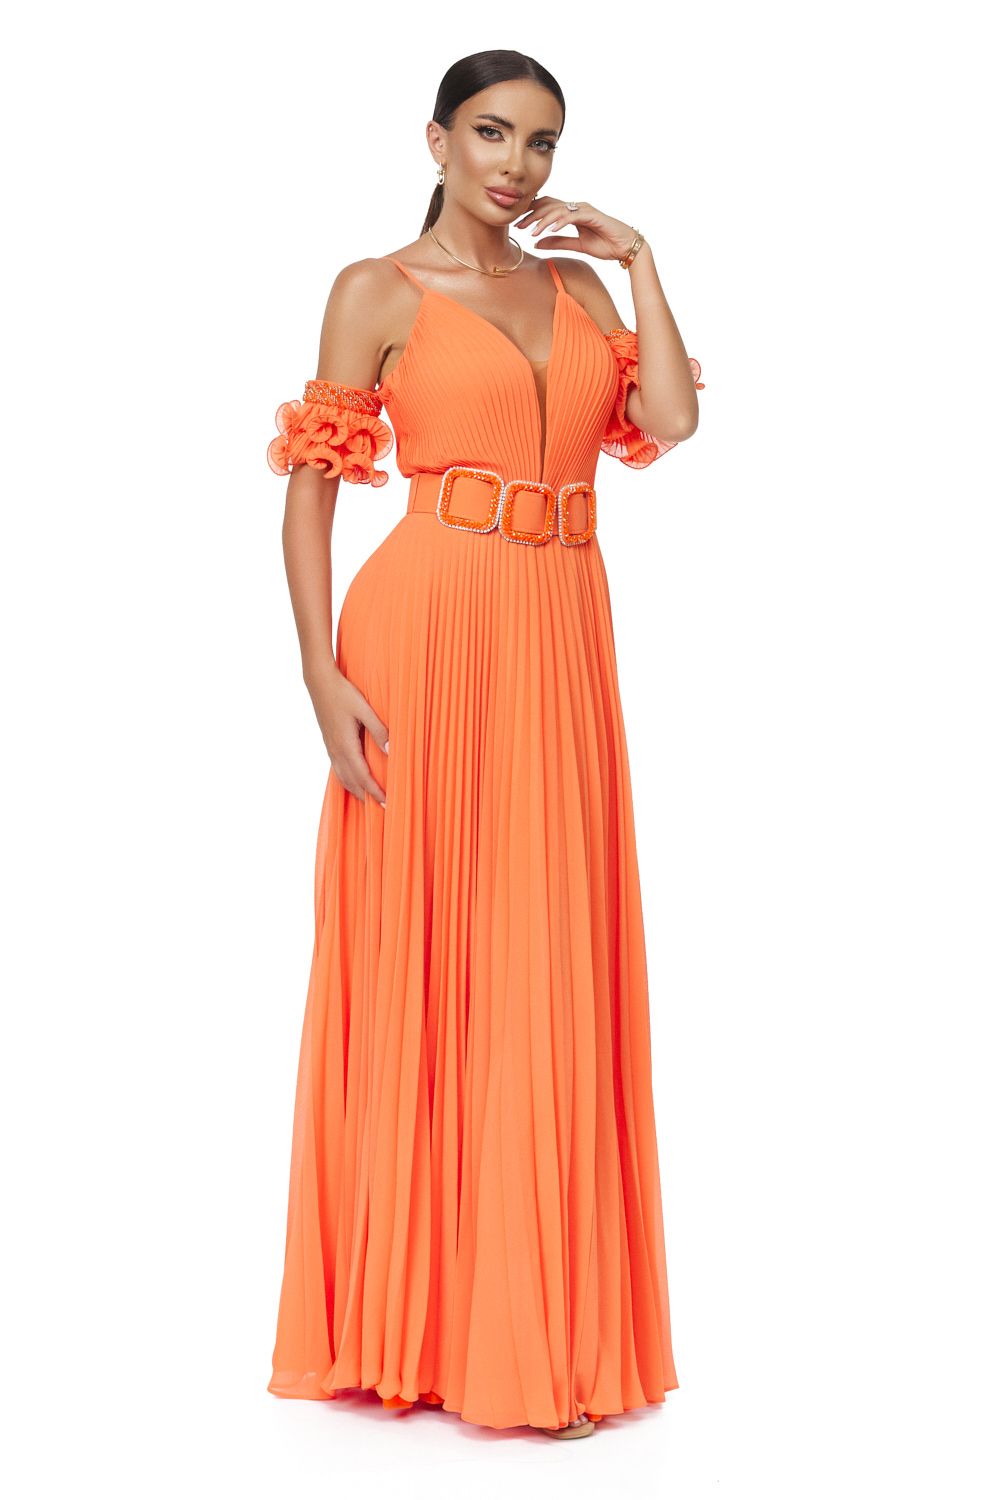 Eremy Bogas hosszú narancssárga női ruha